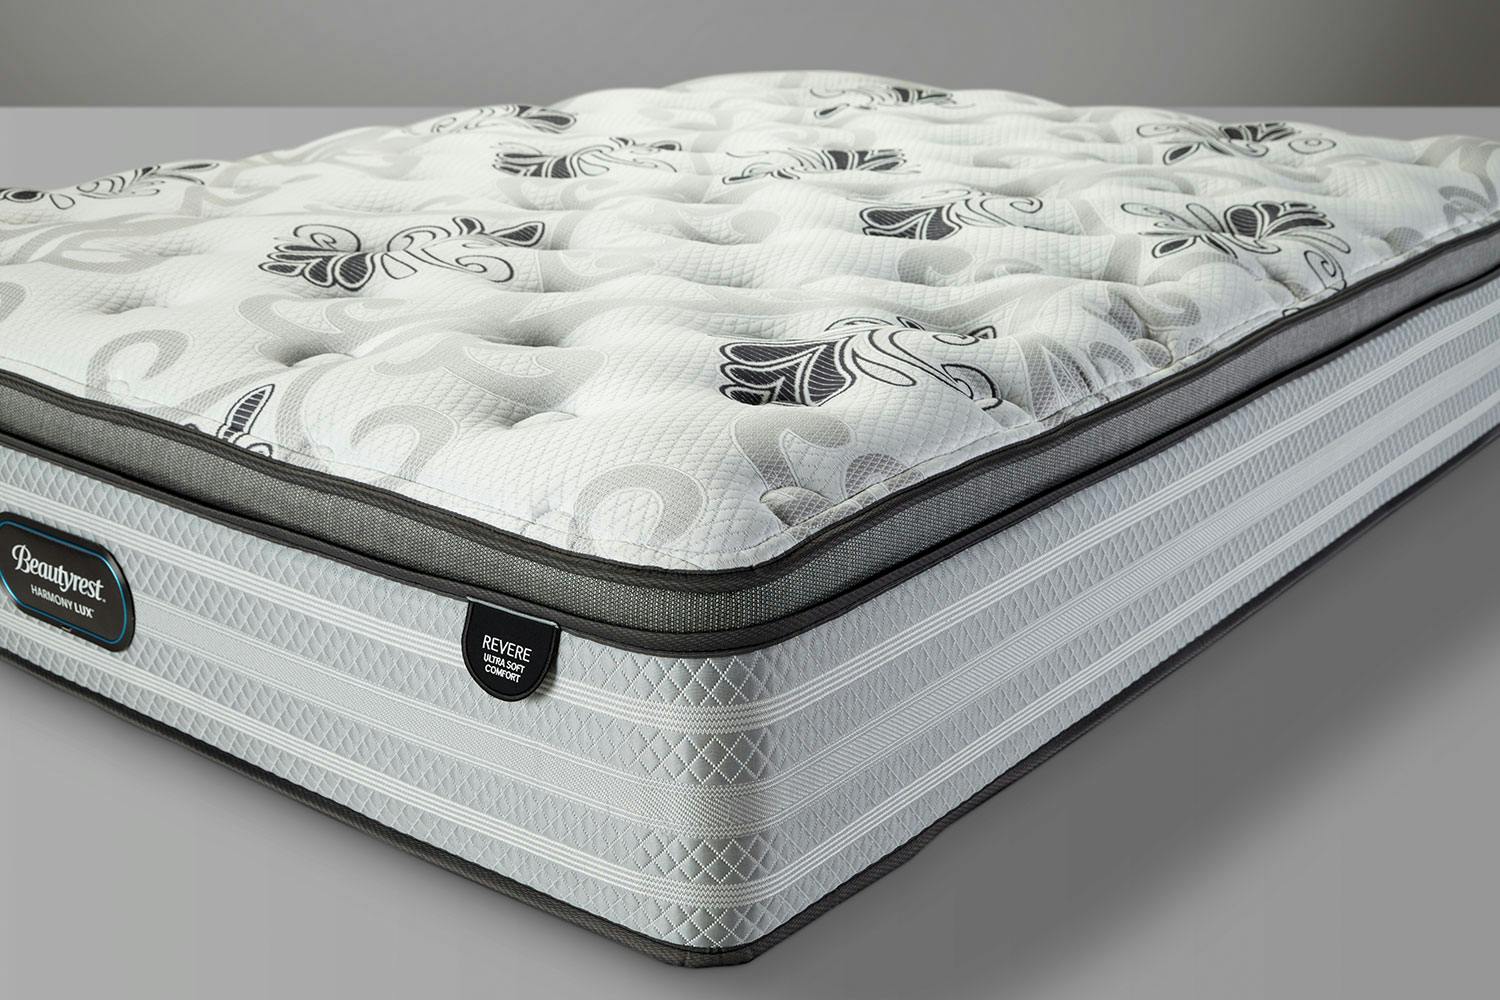 beautyrest platinum kimi extra firm king mattress